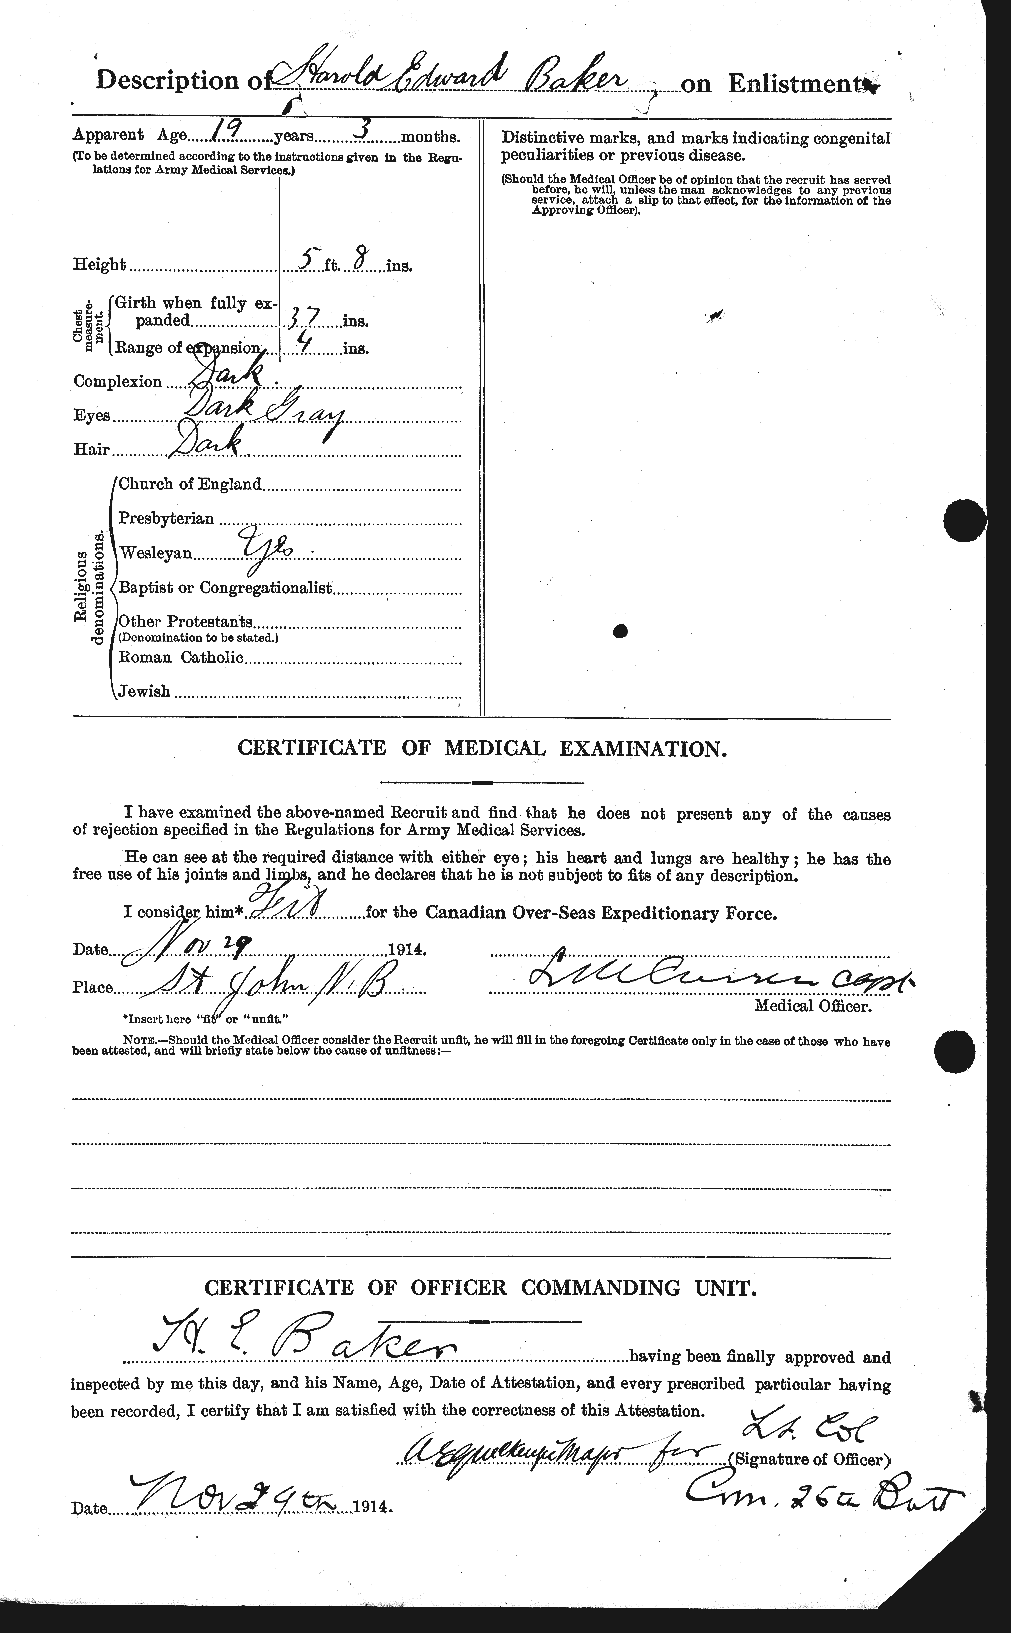 Dossiers du Personnel de la Première Guerre mondiale - CEC 216189b